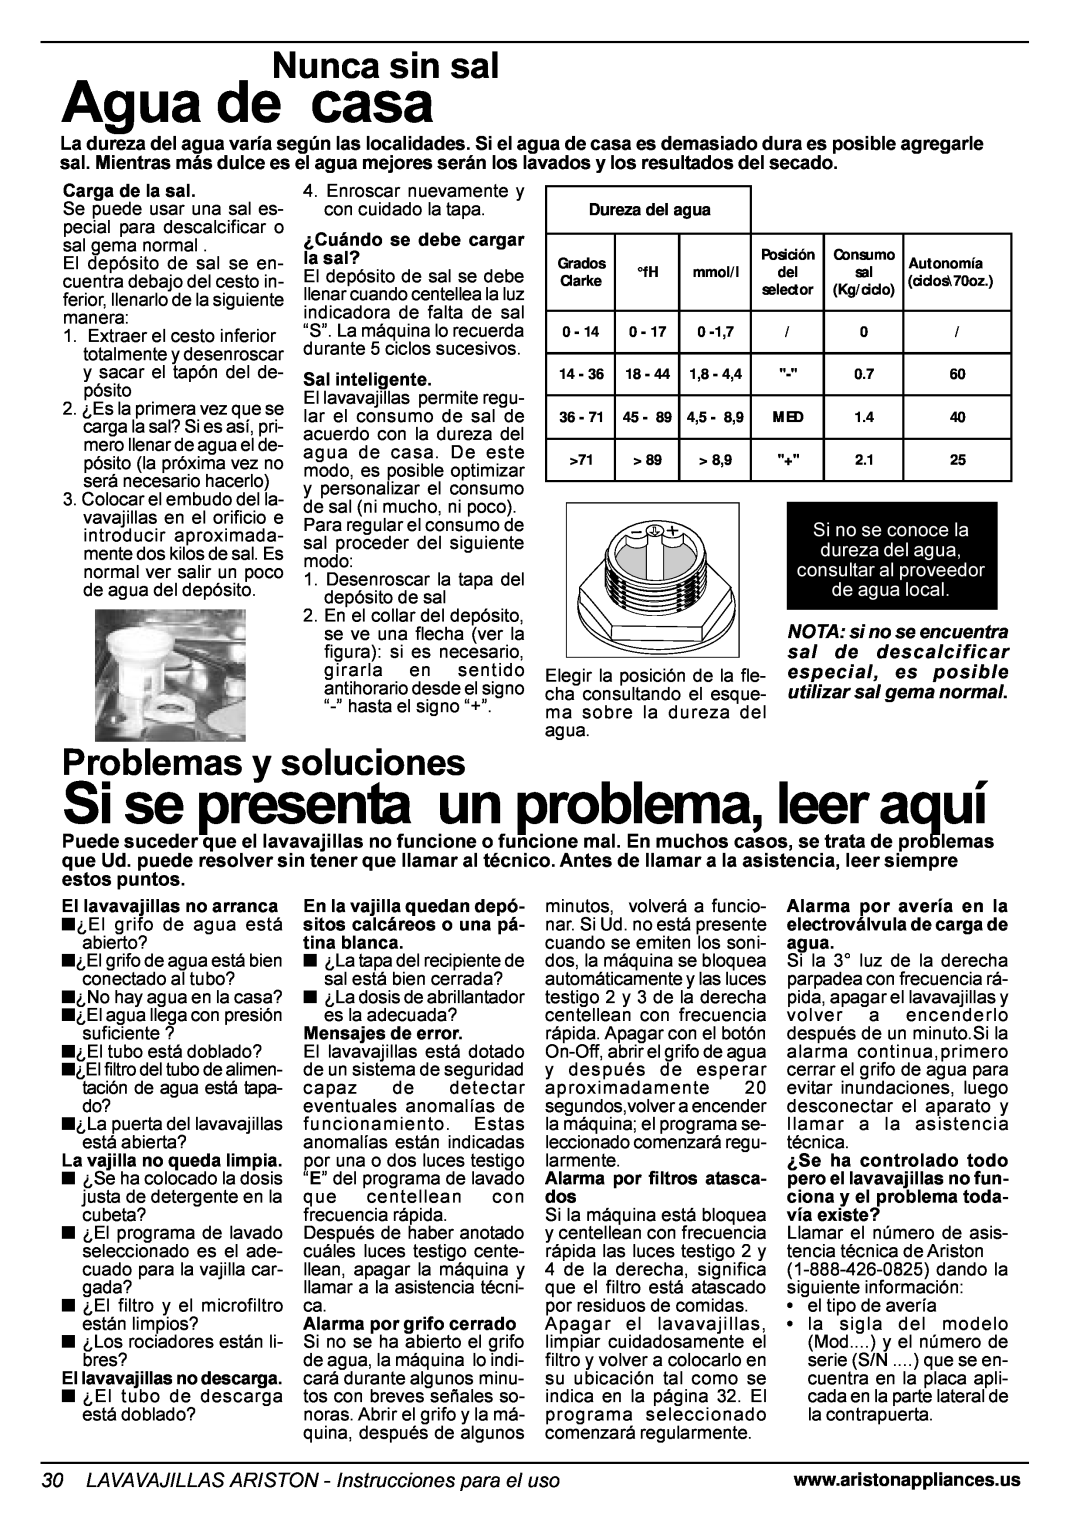 Ariston LL 65 B-S-W manual Agua de casa, Si se presenta un problema, leer aquí, Nunca sin sal, Problemas y soluciones 